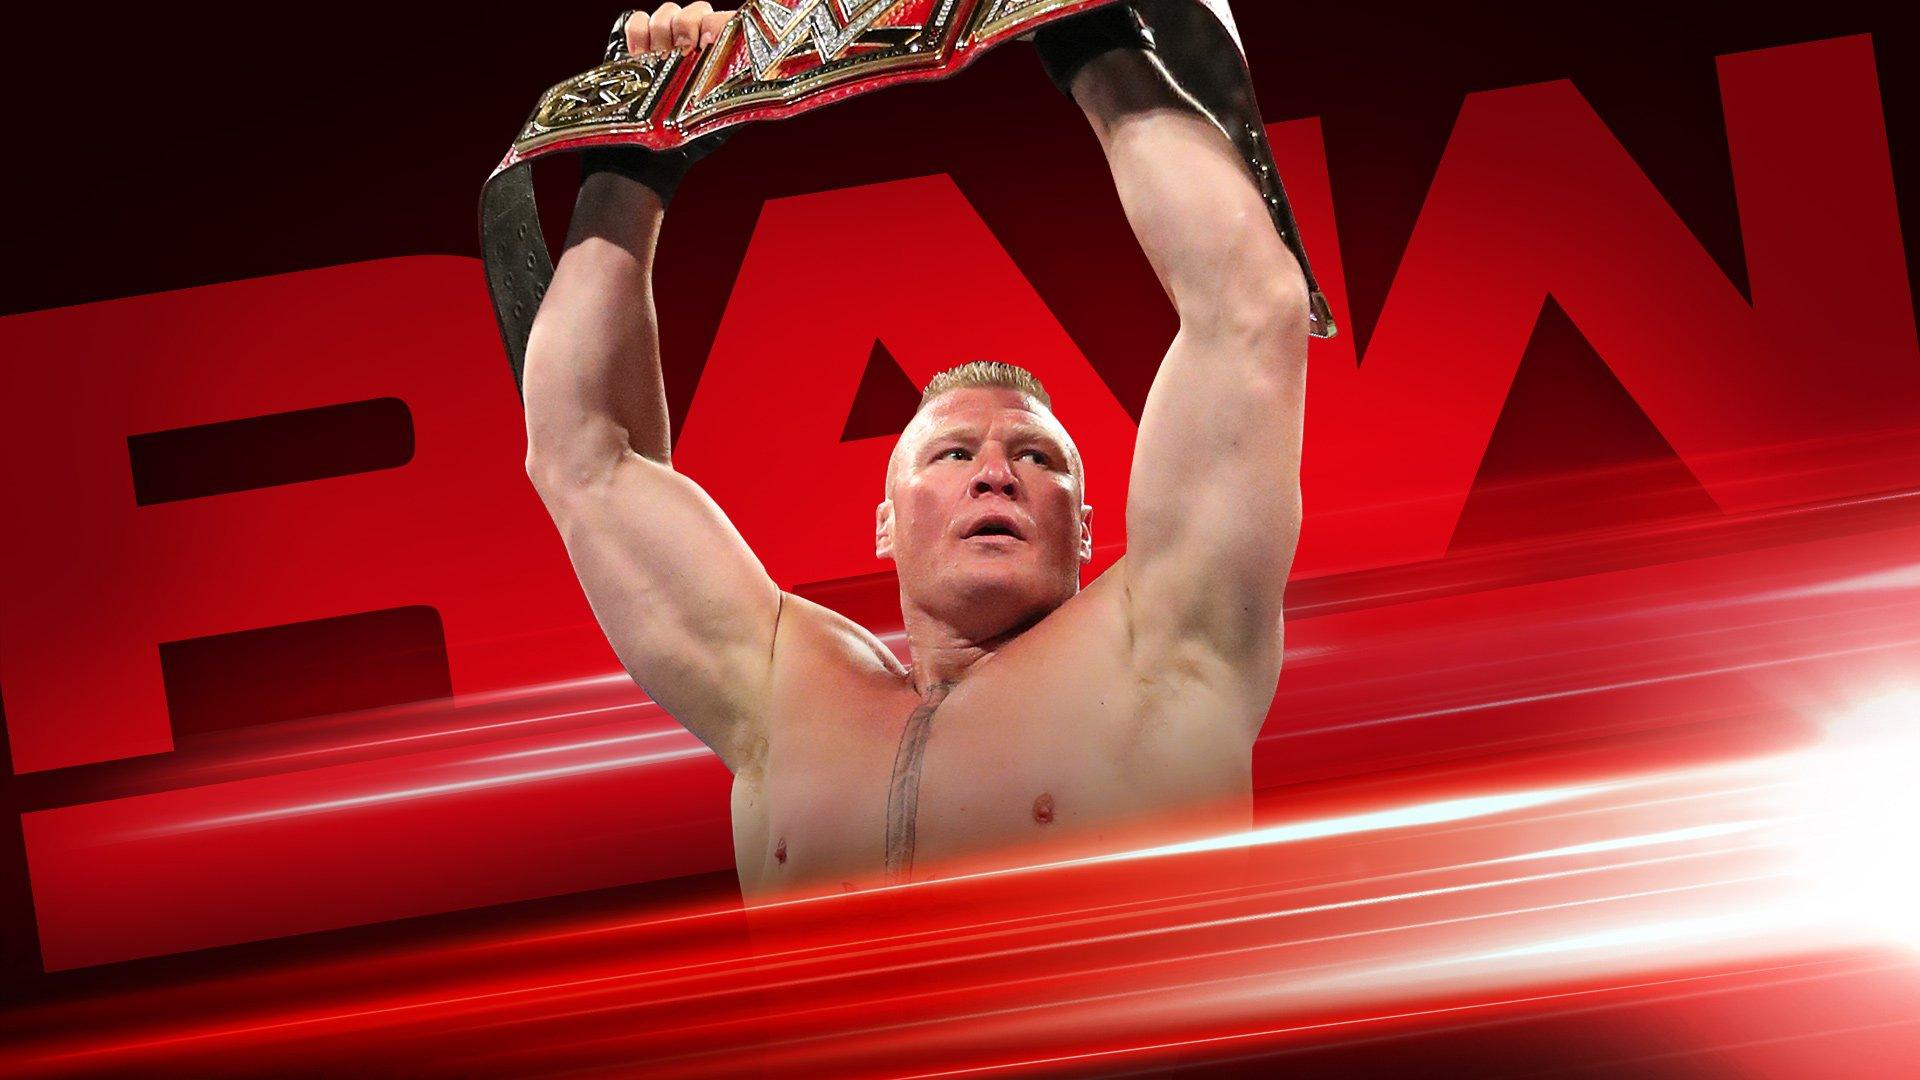 Wwe на русском языке 545. Брок Леснар на Рамбл 2014. WWE Raw 15 кратный. Raw фото.